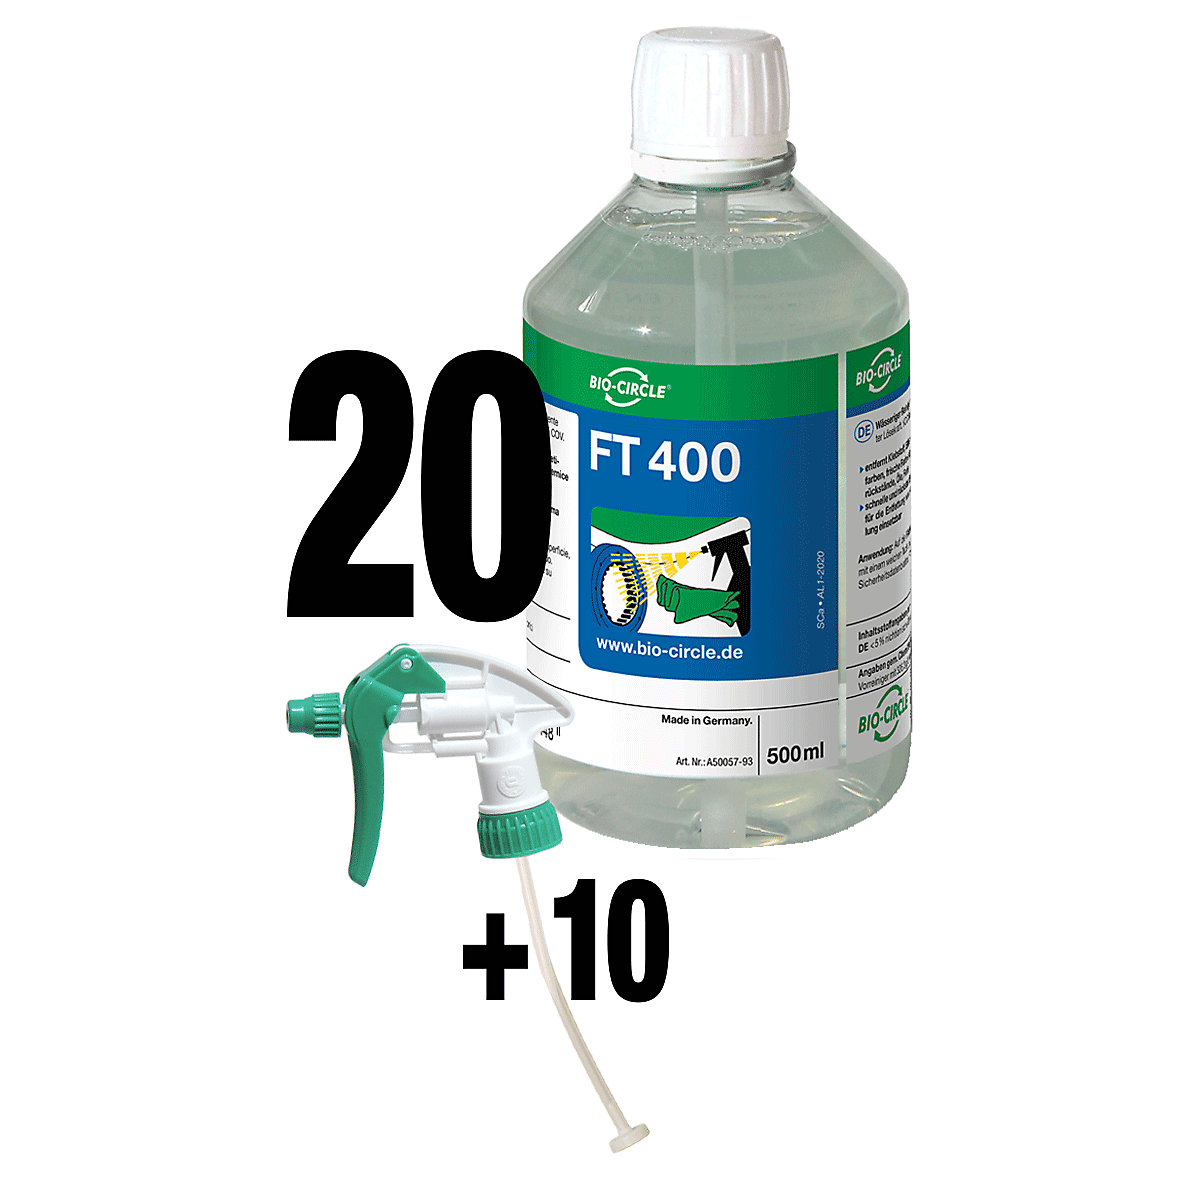 Sredstvo za čišćenje FT 400 – Bio-Circle